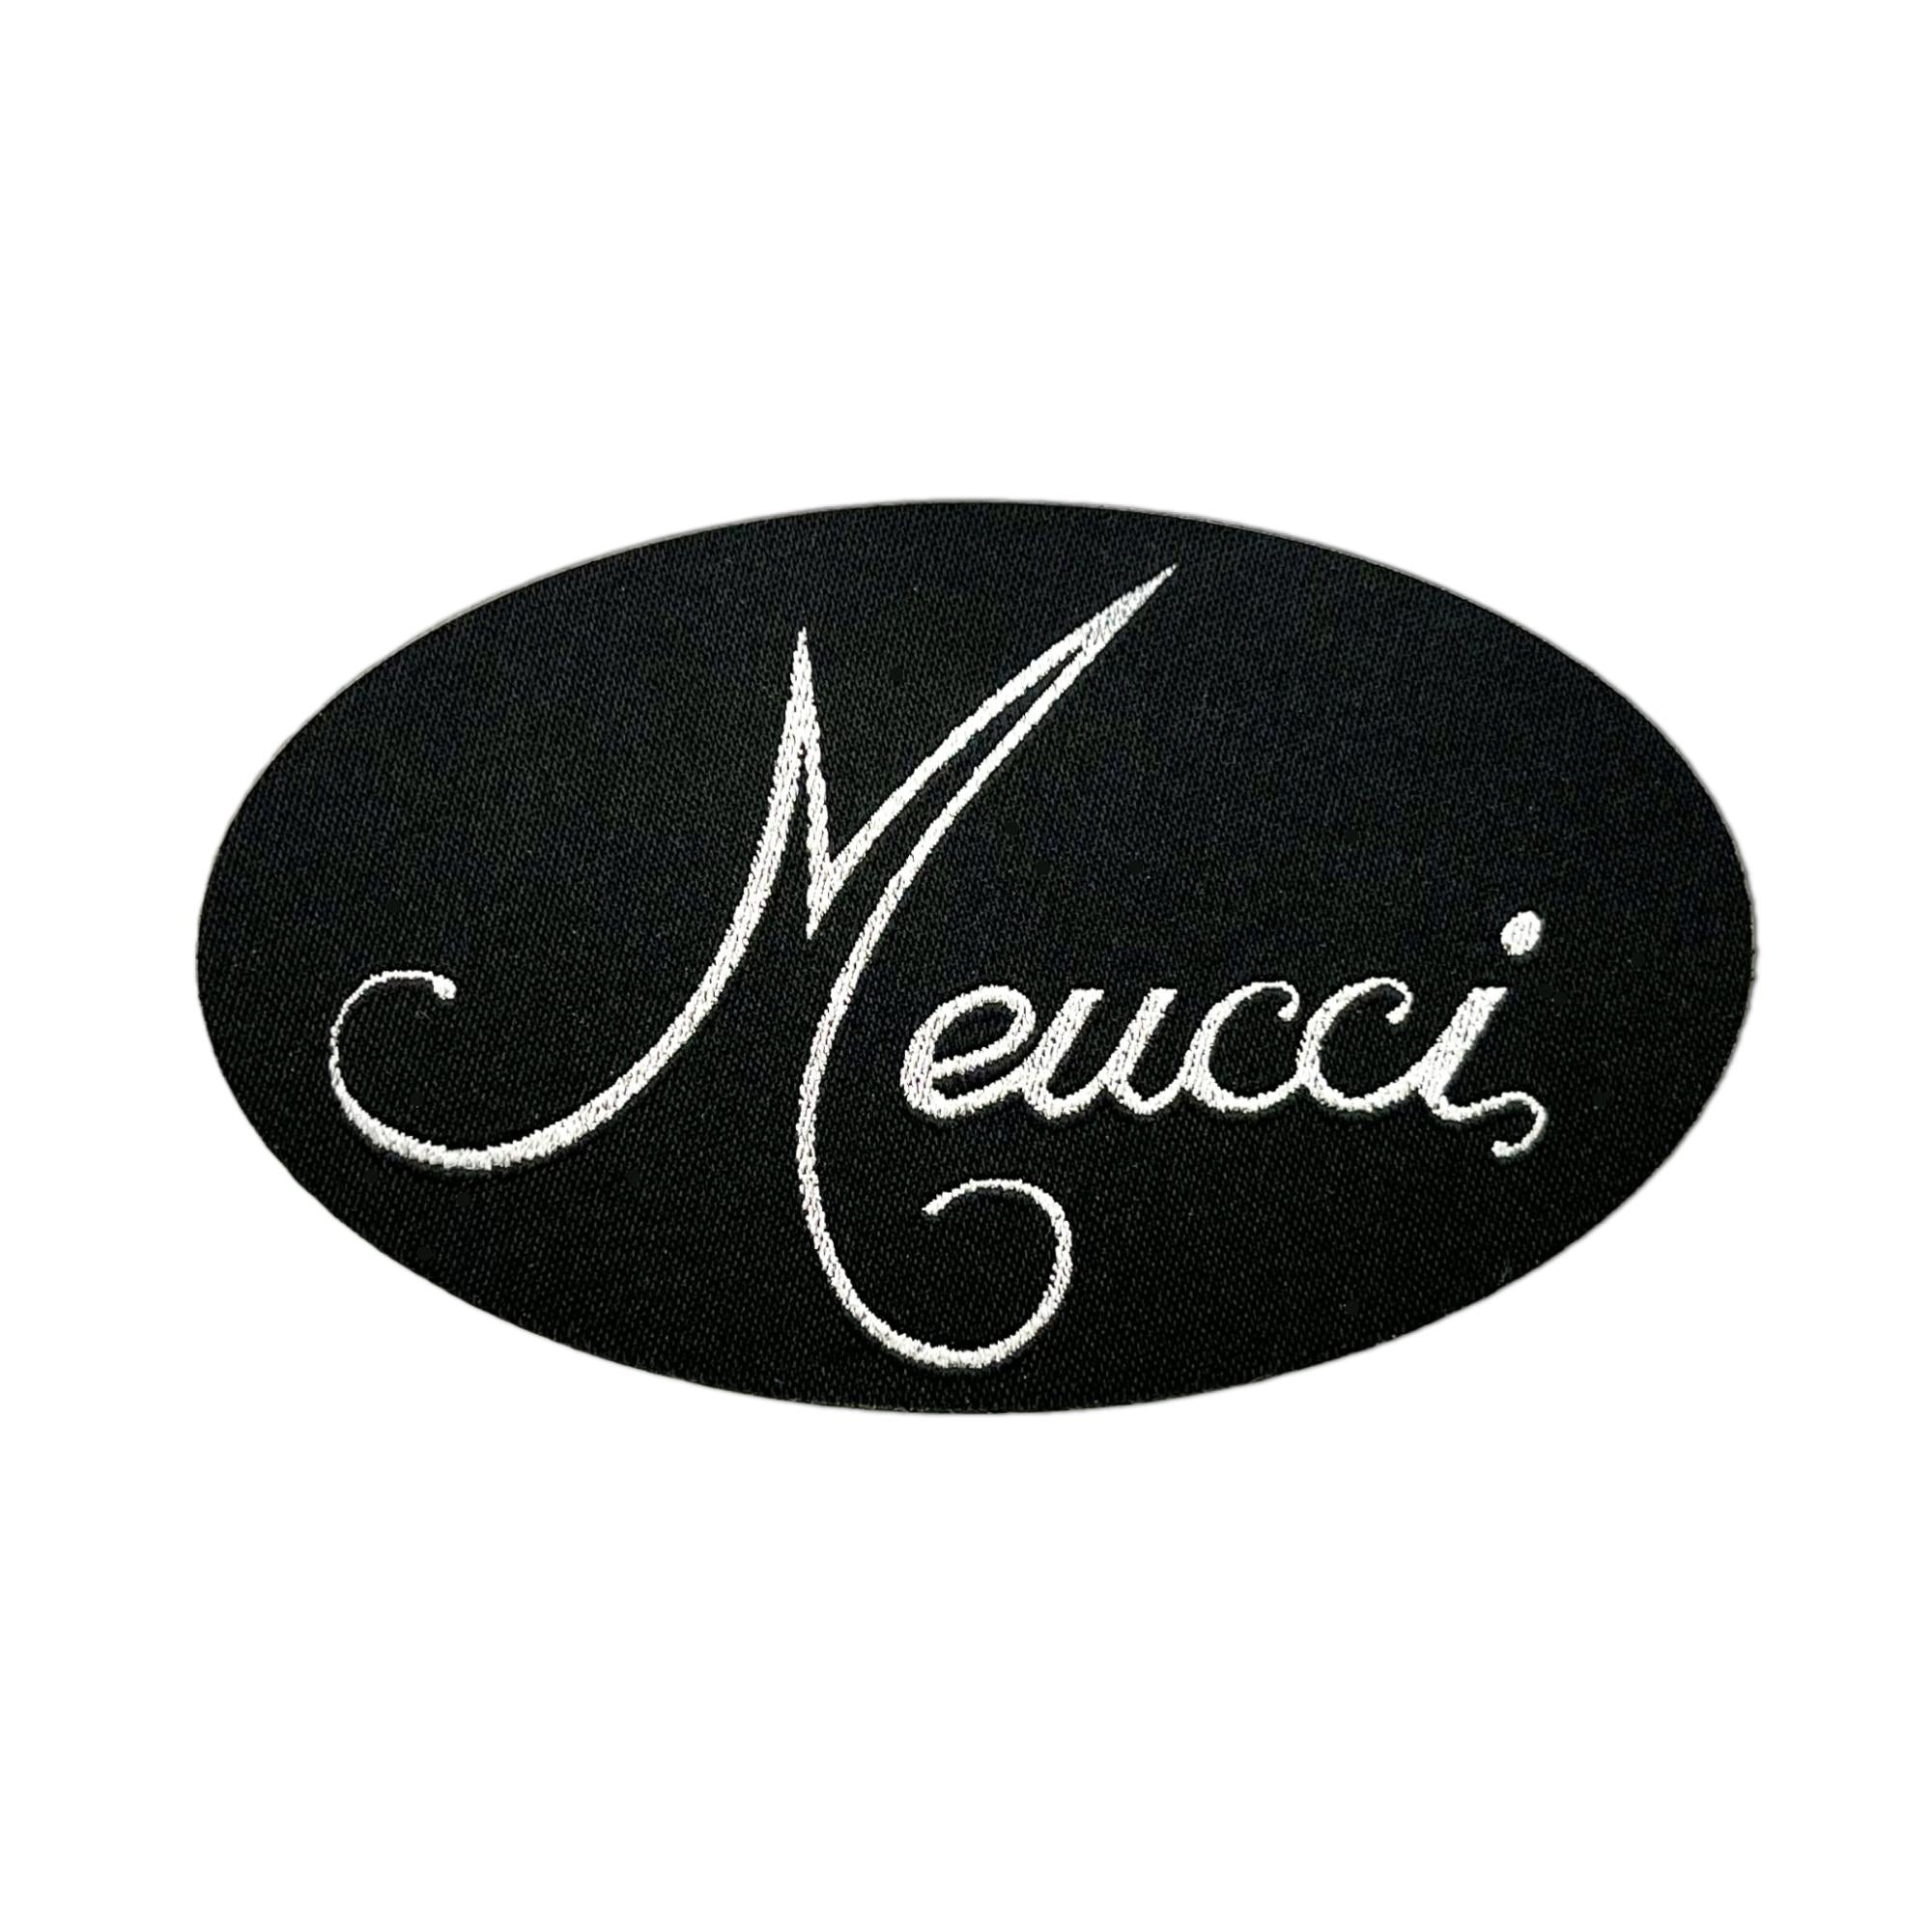 Meucci Patches – Meucci Cues